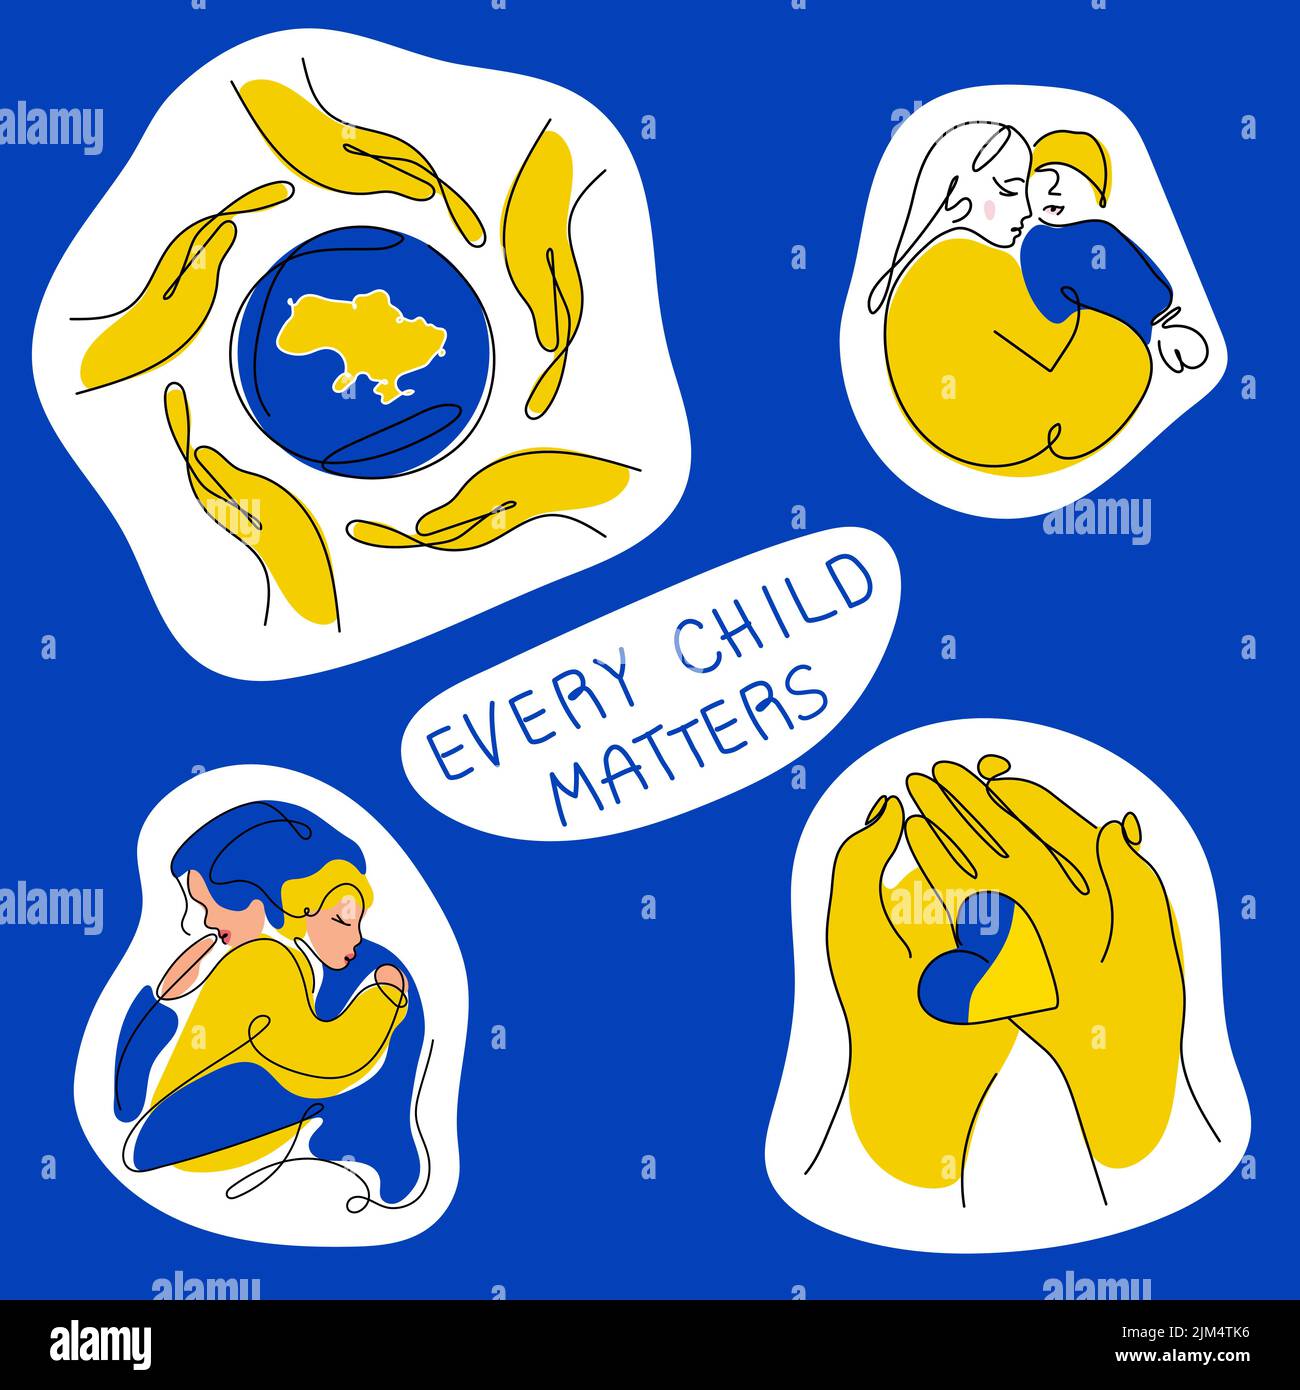 Satz von patriotischen Sticker der ukrainischen Illustration mit Frauen, Kindern, Händen in traditionellen Farben. Vektor-Illustration globale Politik, KEIN KRIEG in Stock Vektor